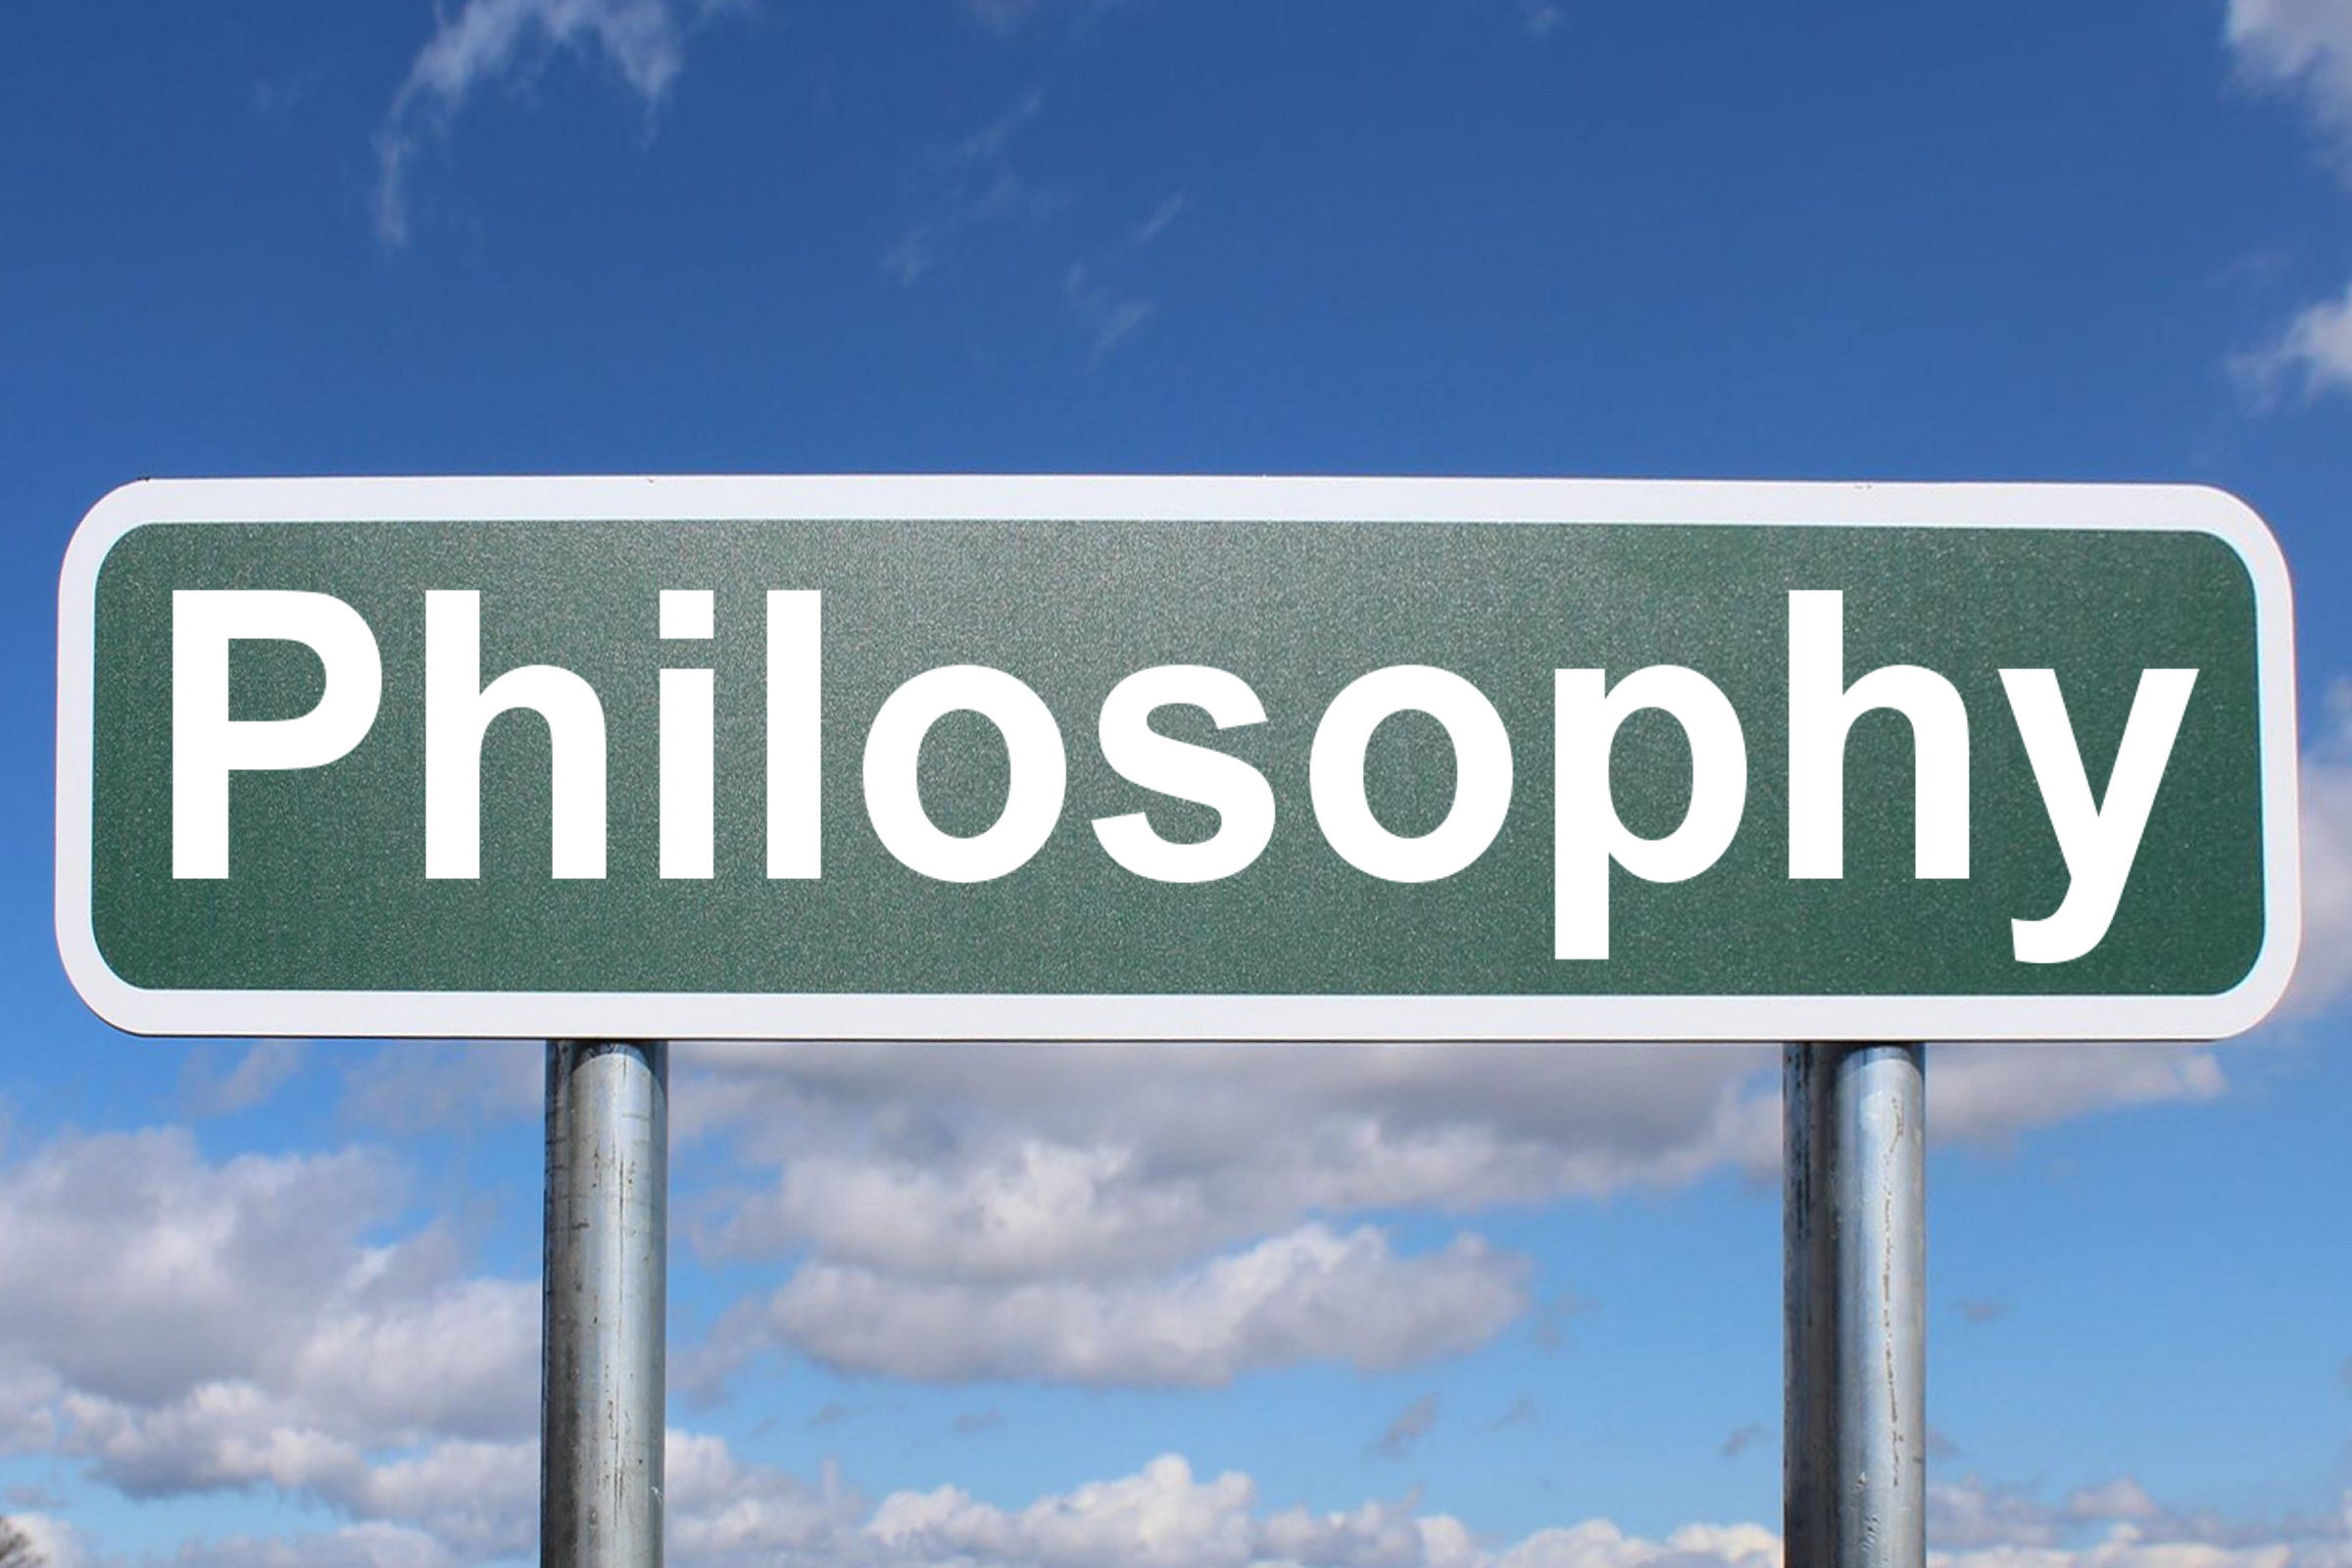 philosophy